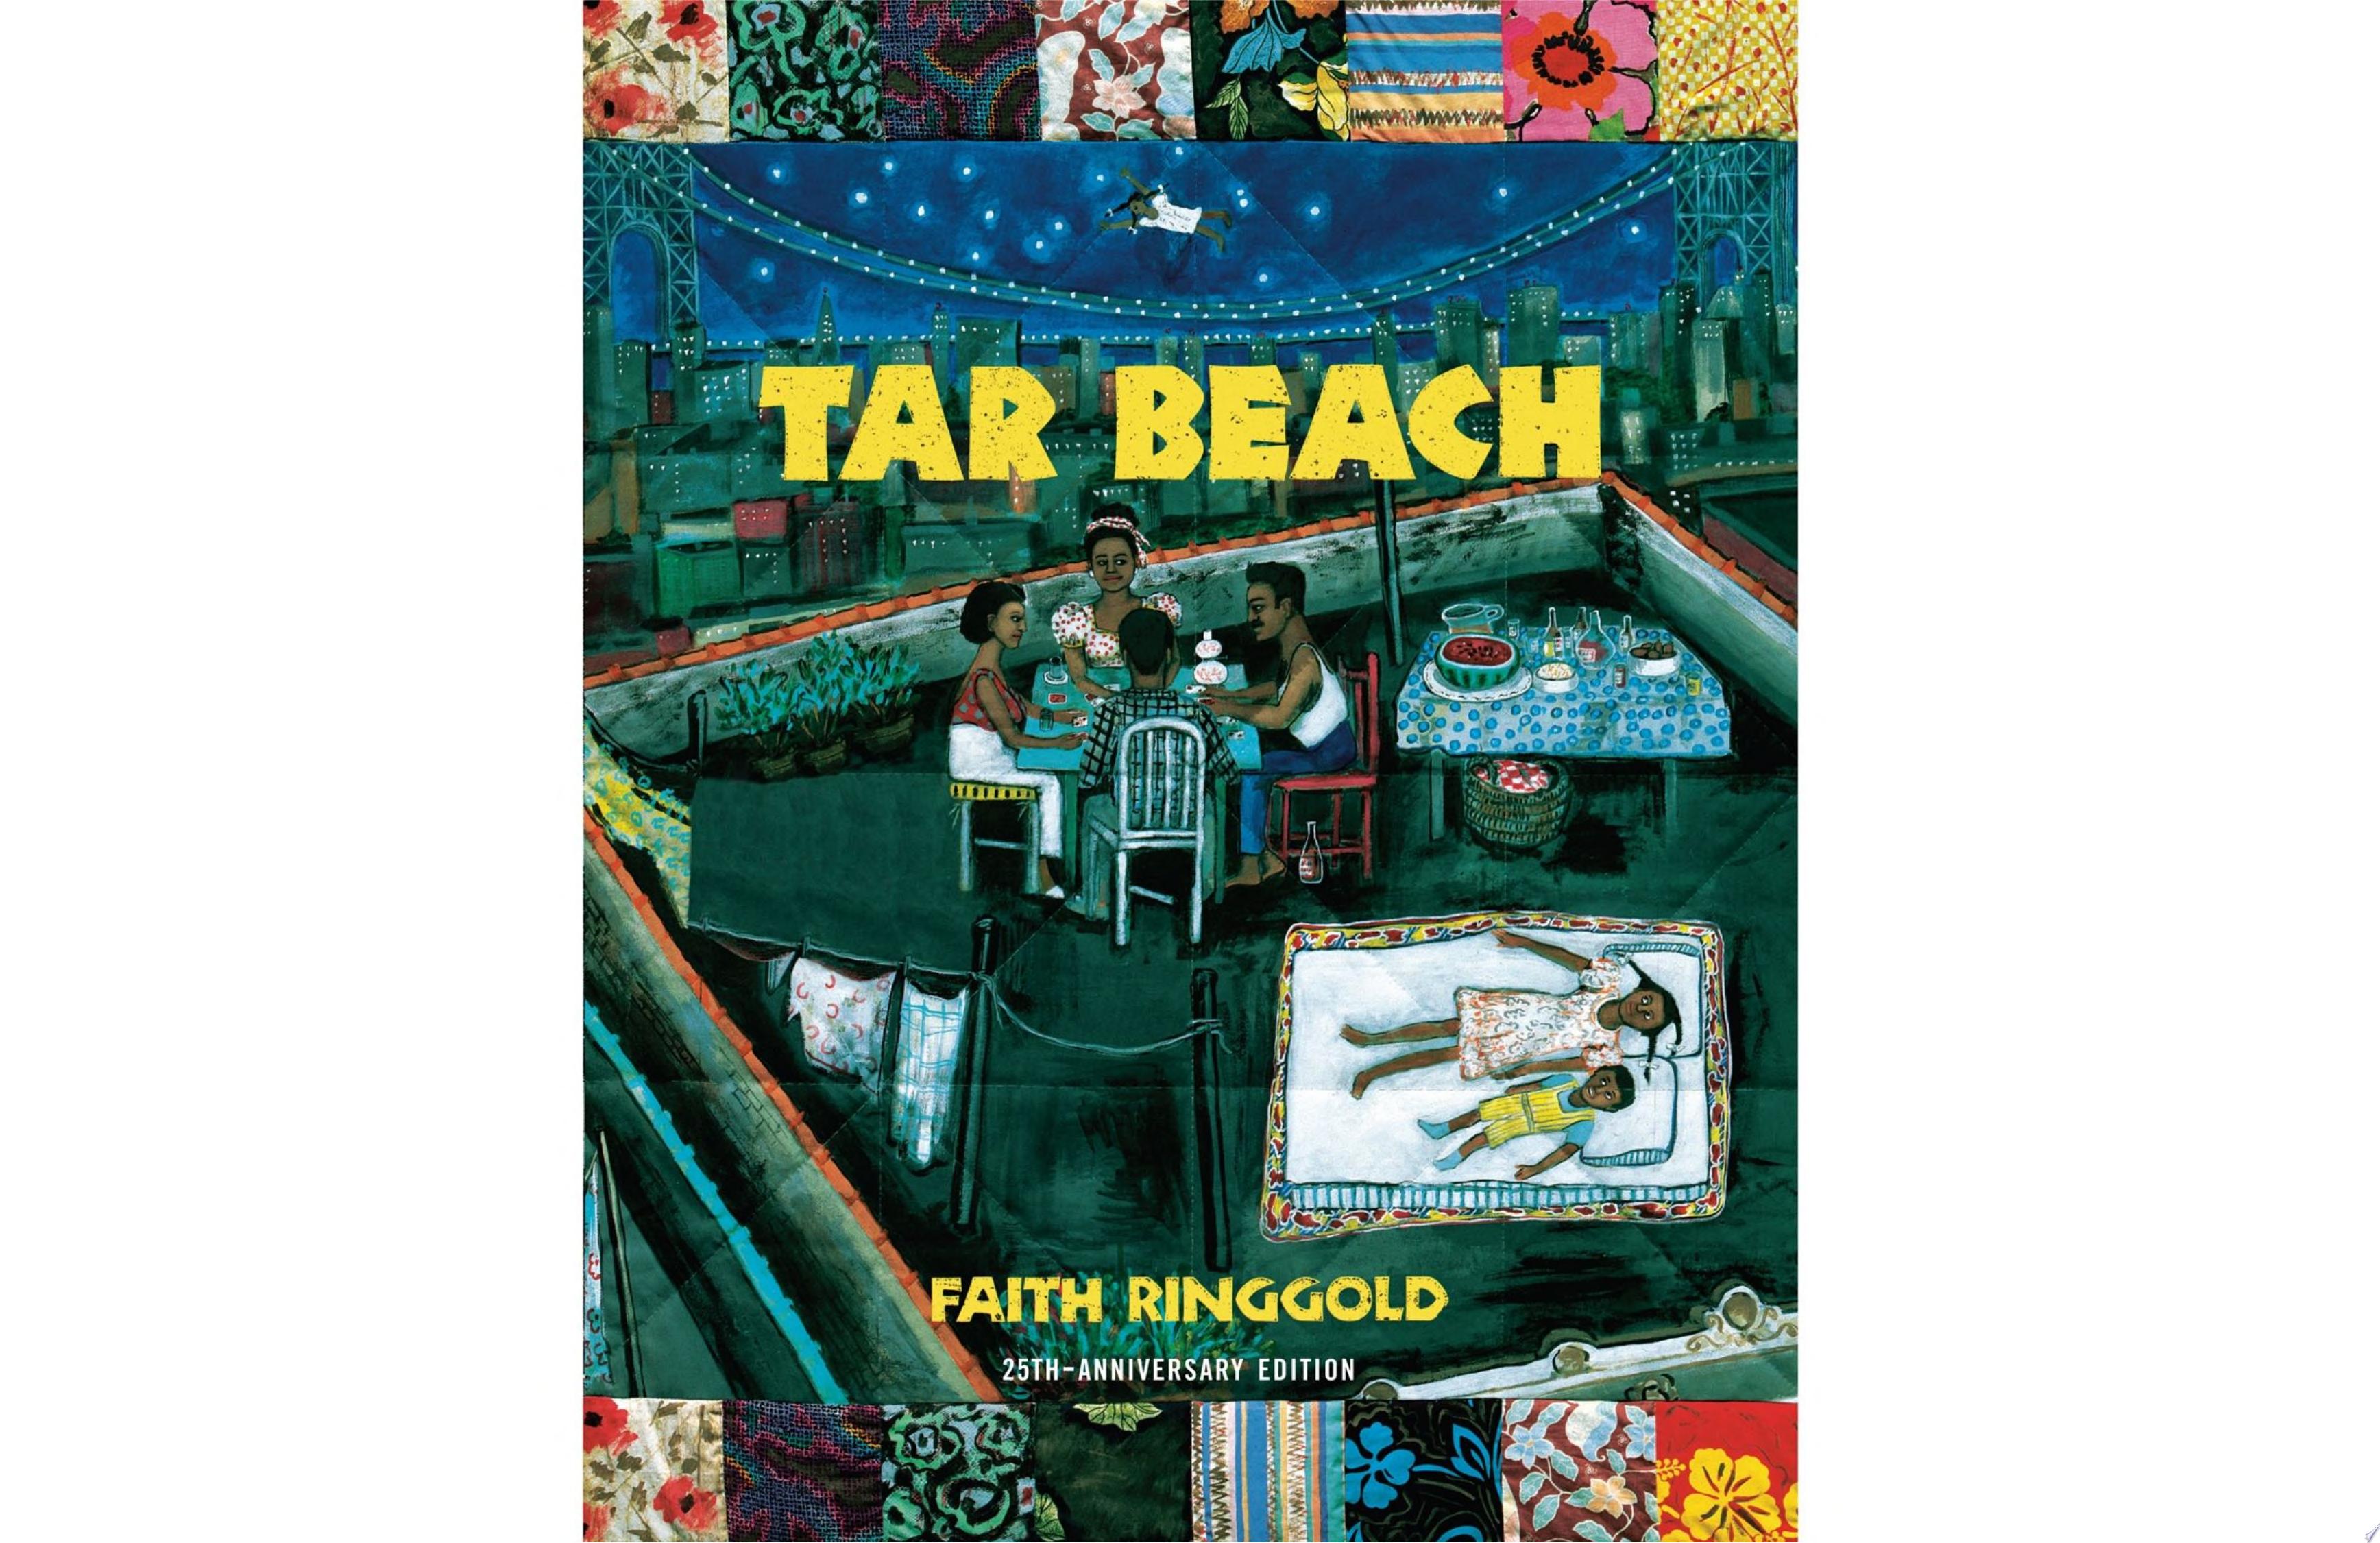 Image for "Tar Beach"